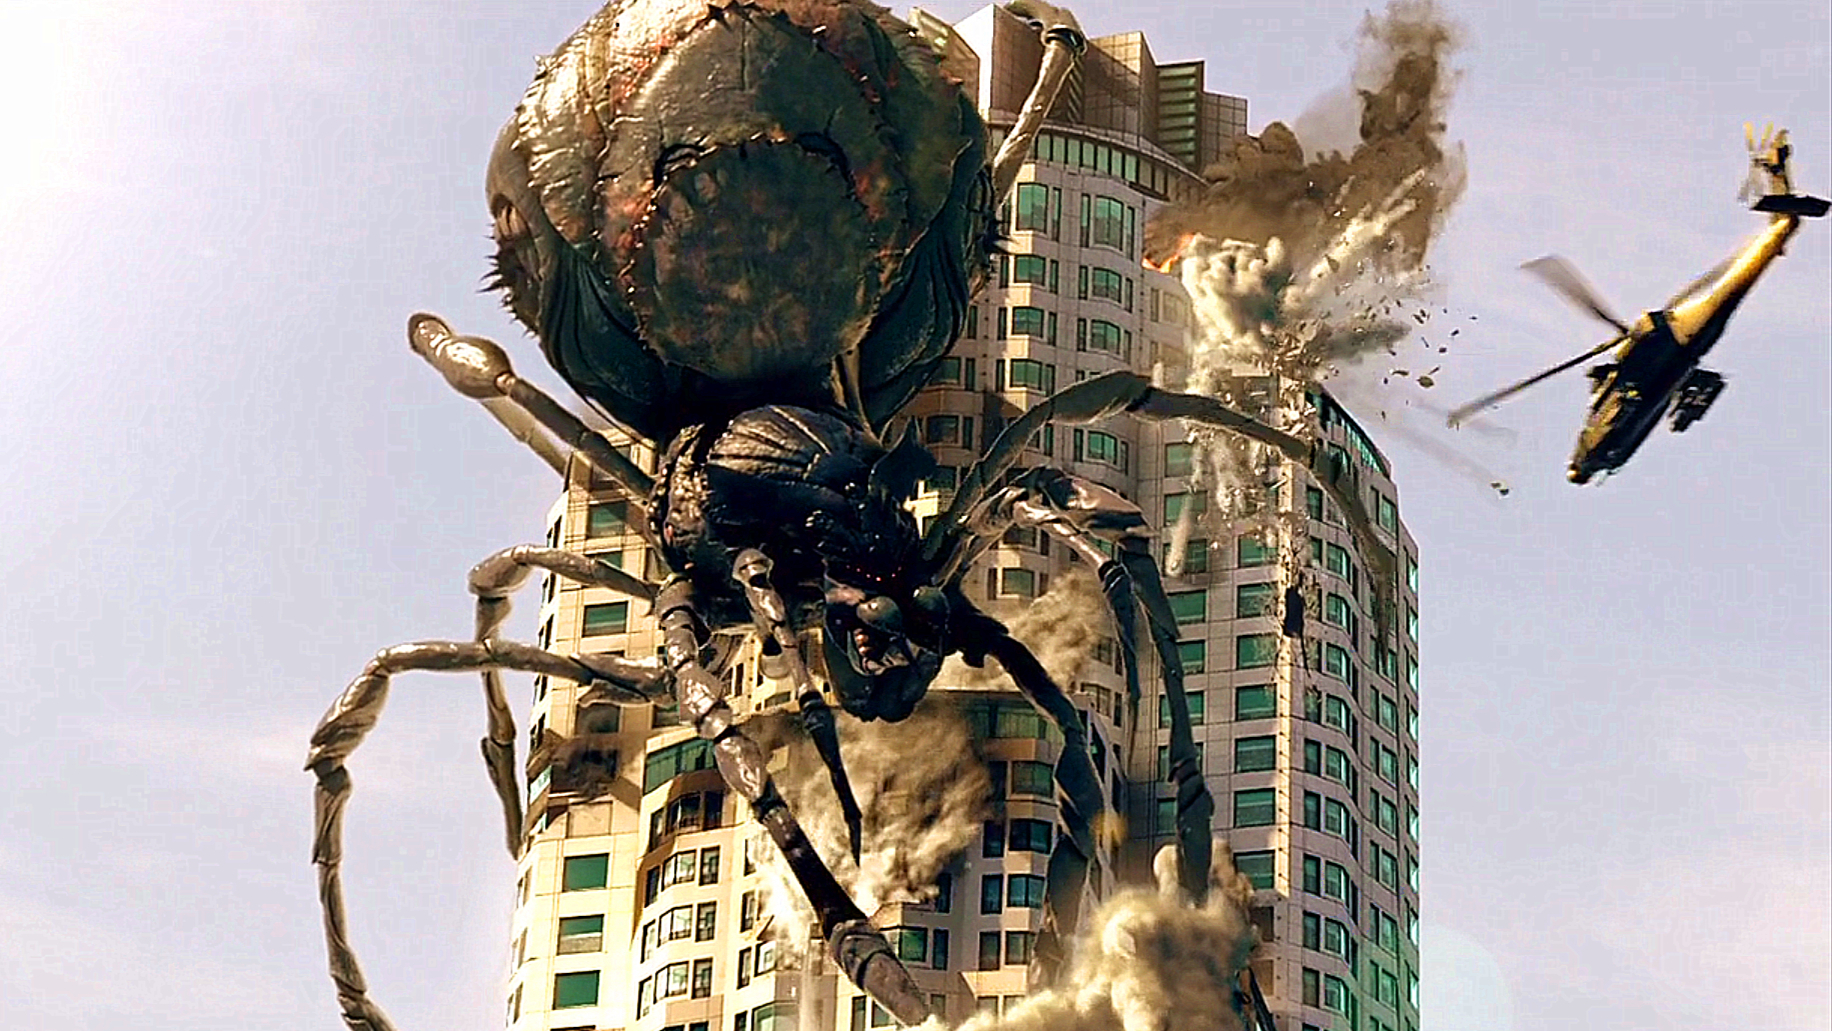 世界上最大的蜘蛛王图片